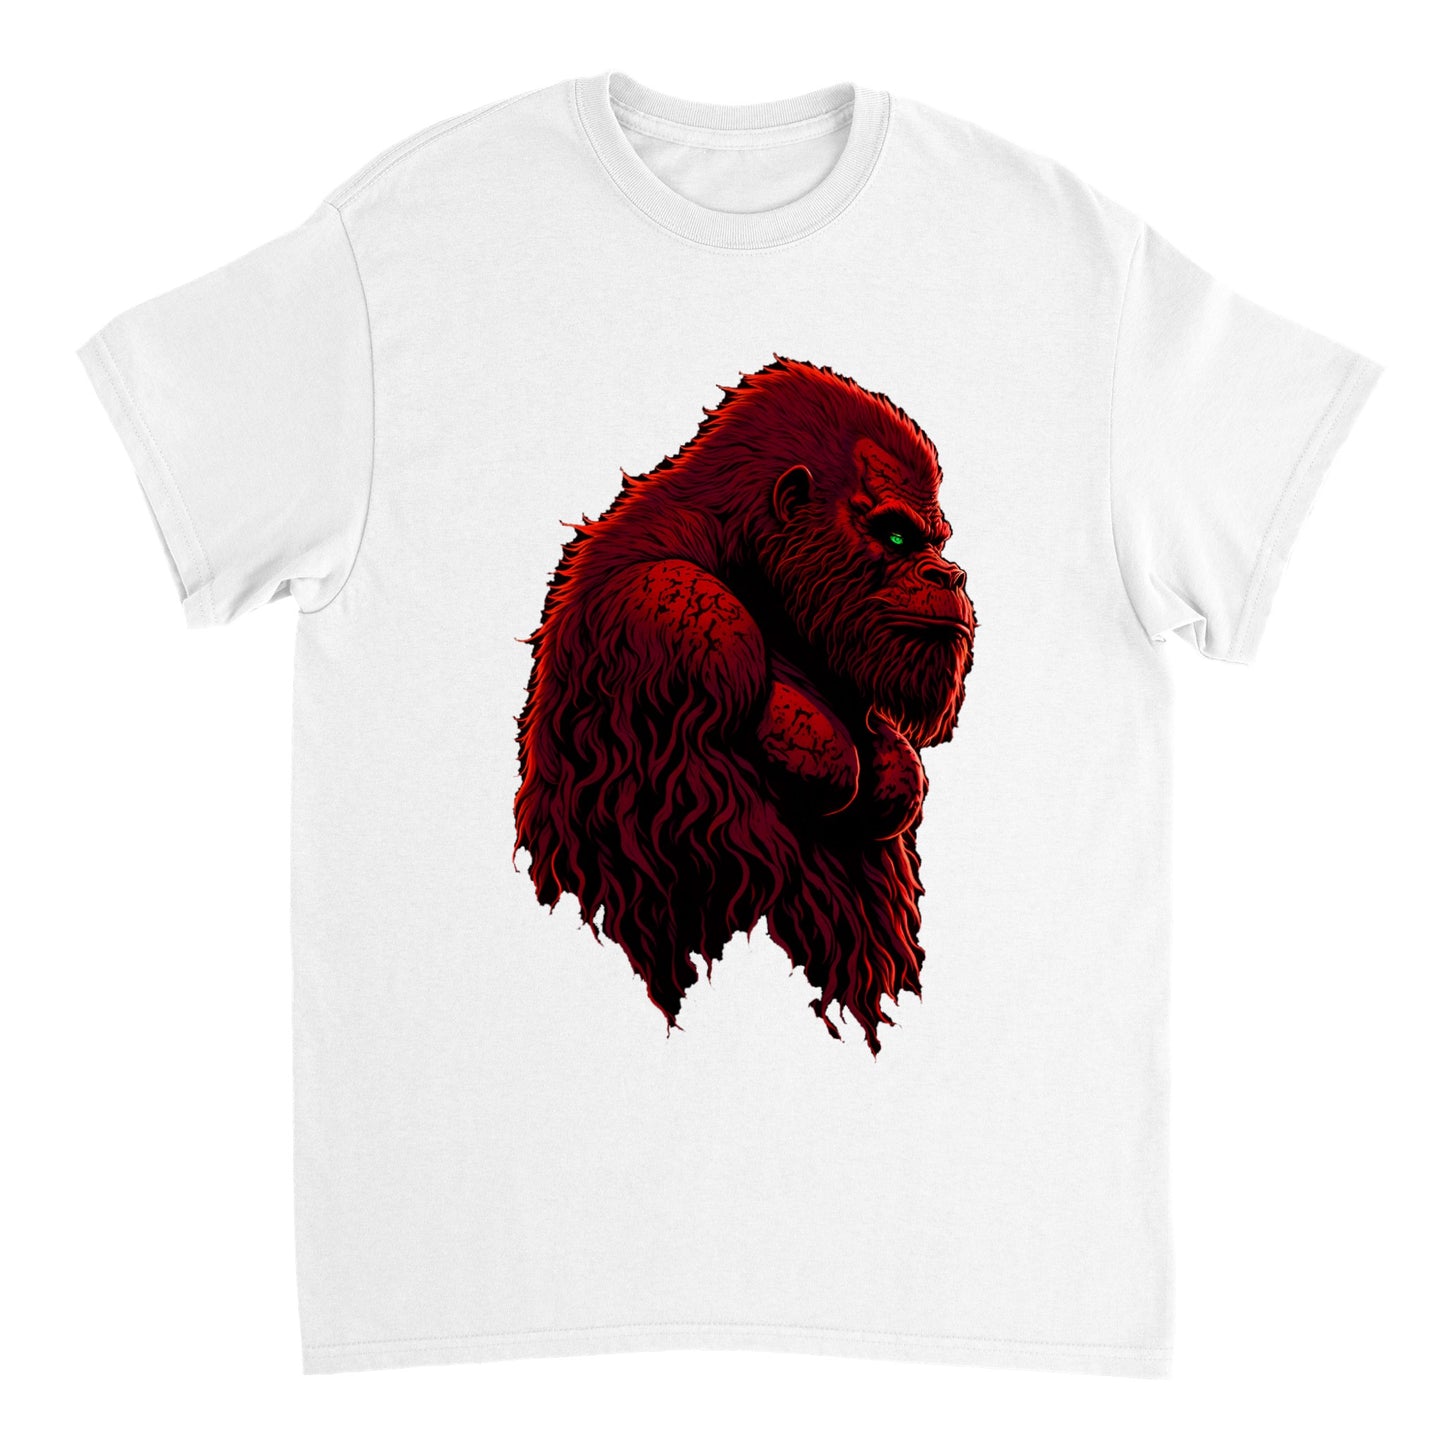 3D Bigfoot Art - Heavyweight Unisex Crewneck T-shirt 33